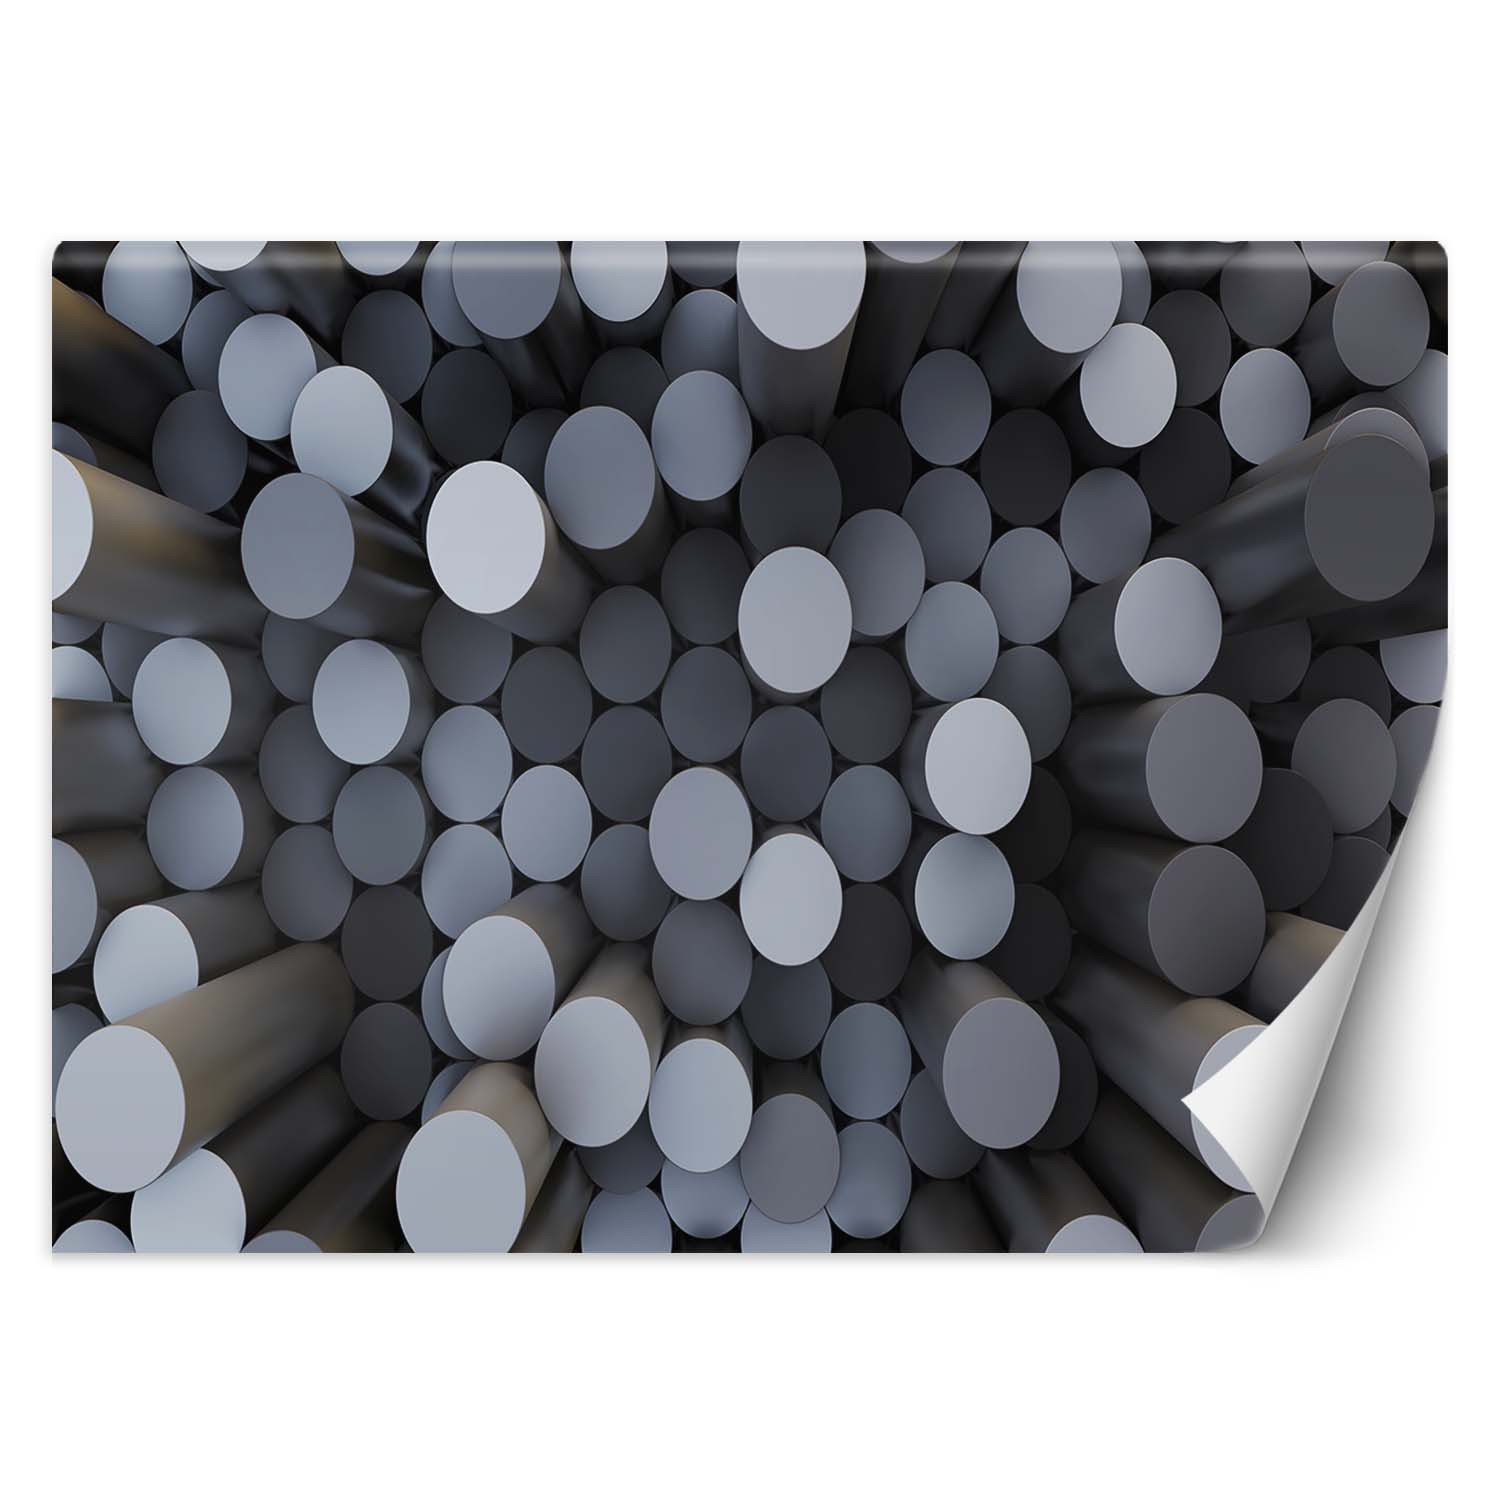 Trend24 – Behang – Abstracte Cilinders 3D – Behangpapier – Fotobehang 3D – Behang Woonkamer – 450x315x2 cm – Incl. behanglijm